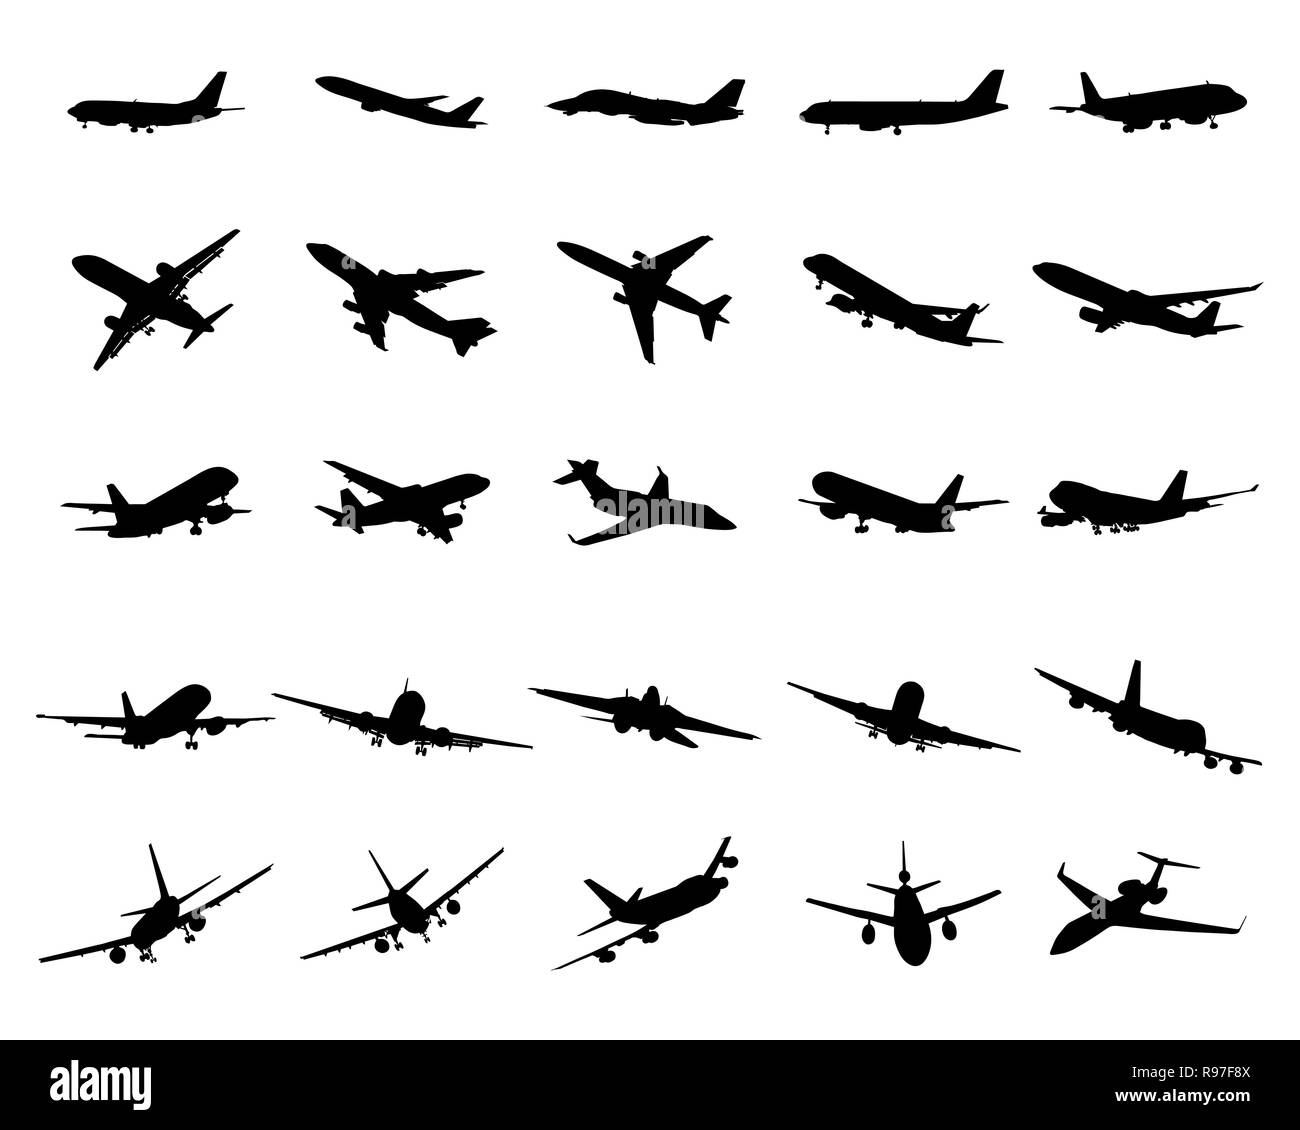 Silhouettes noires d'avions sur fond blanc Banque D'Images